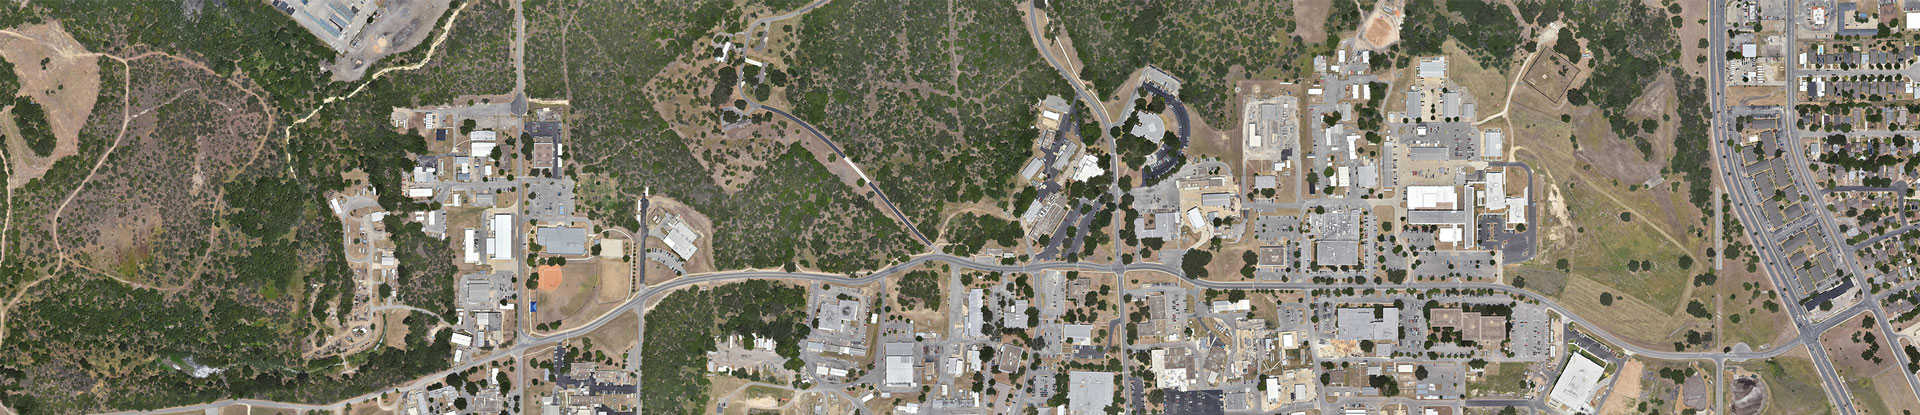 aerial image of SwRI